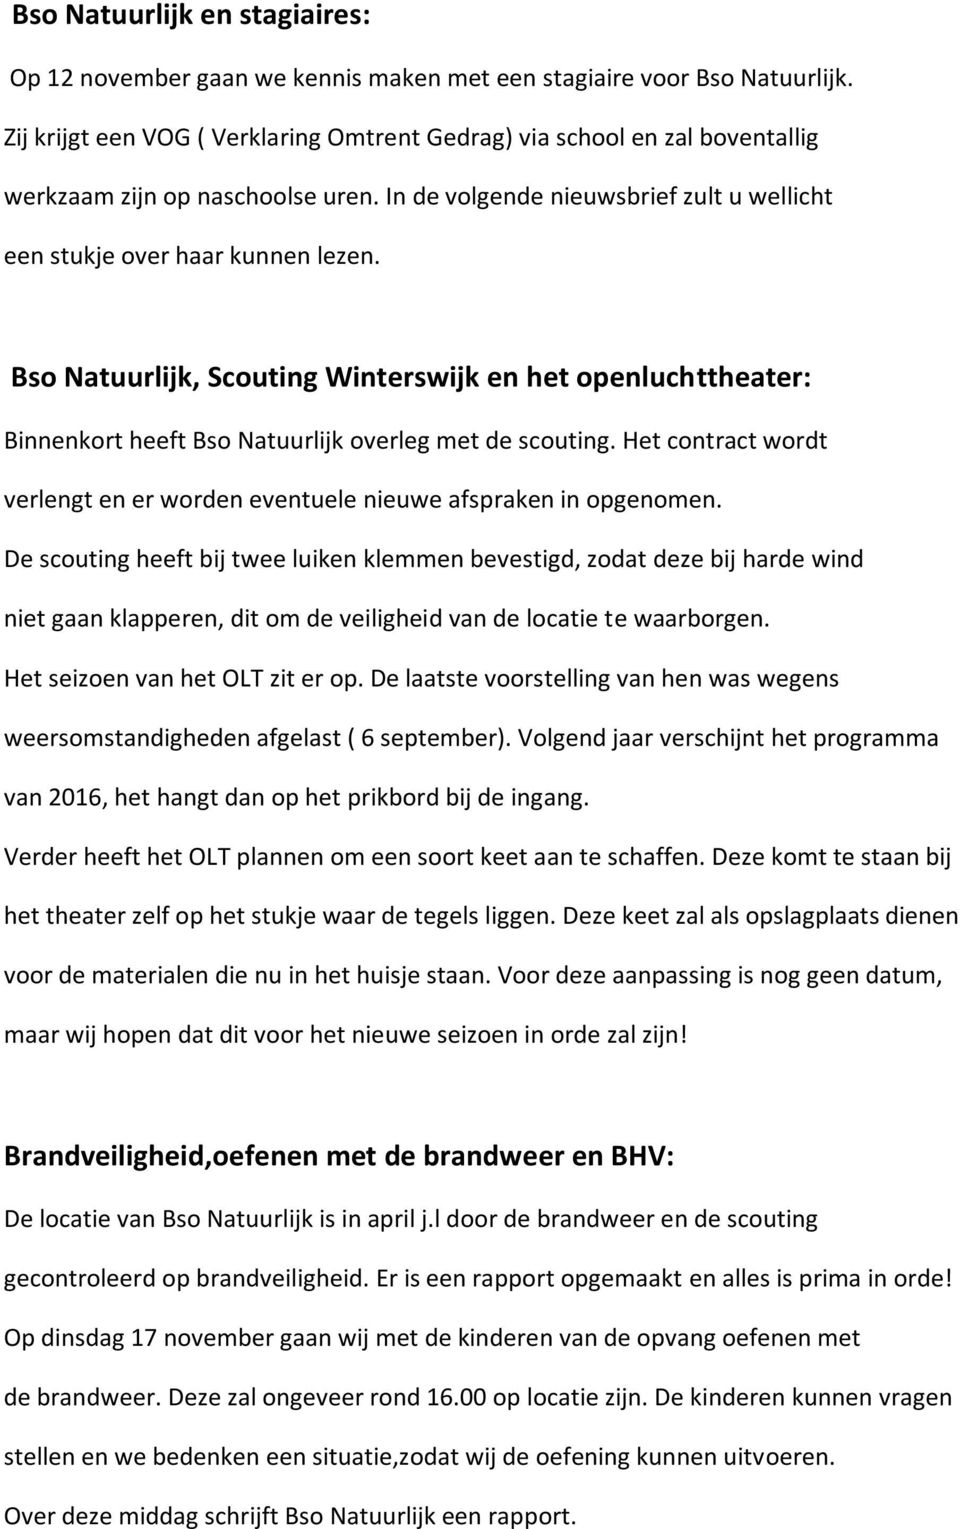 Bso Natuurlijk, Scouting Winterswijk en het openluchttheater: Binnenkort heeft Bso Natuurlijk overleg met de scouting. Het contract wordt verlengt en er worden eventuele nieuwe afspraken in opgenomen.